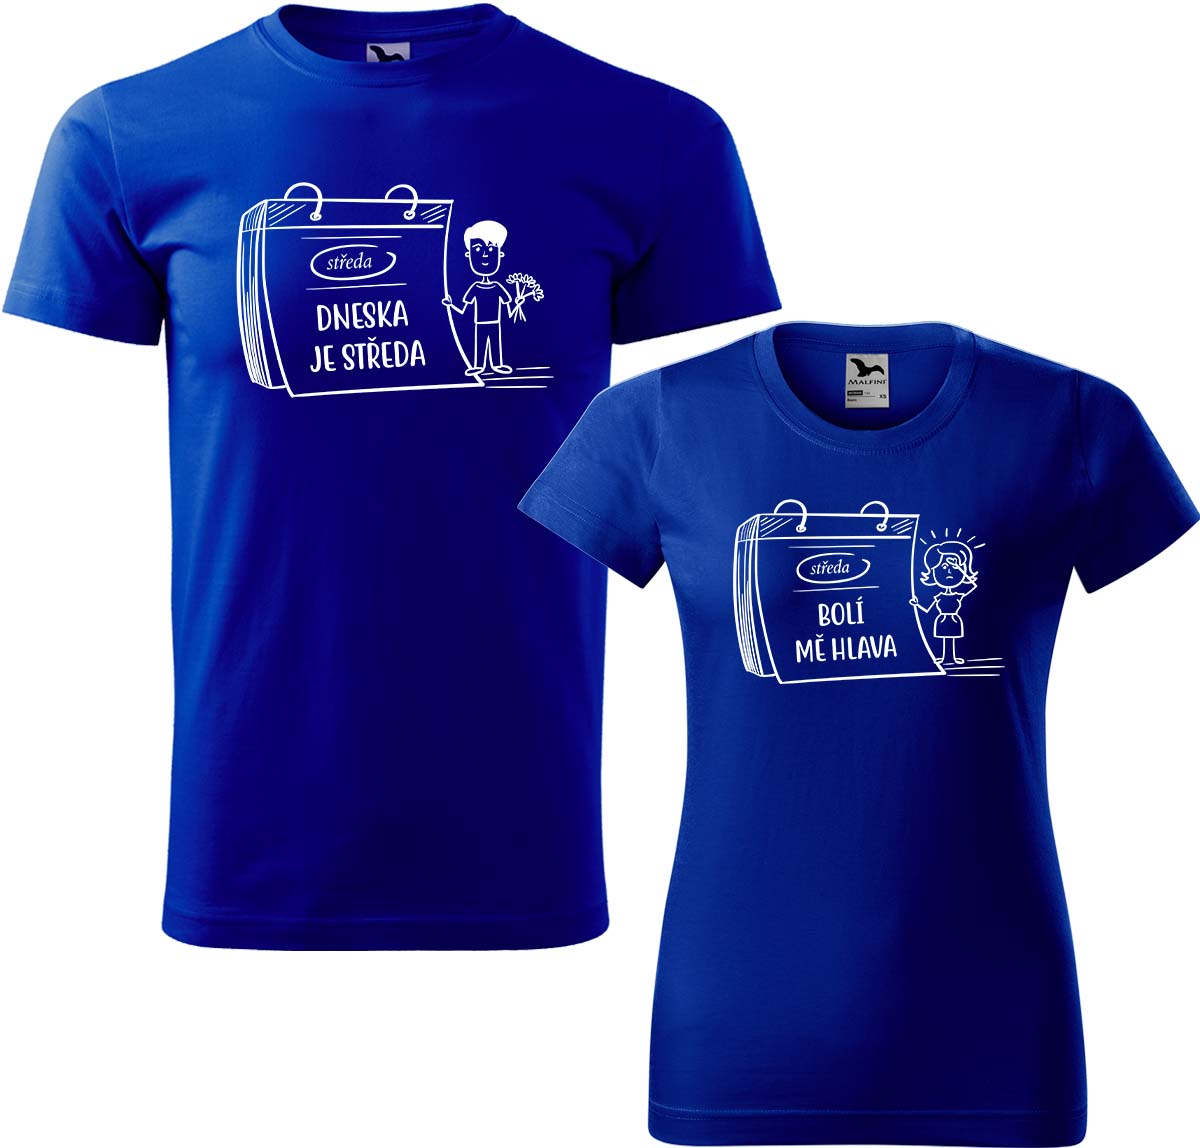 Trička pro páry - Dneska je středa Barva: Královská modrá (05), Velikost dámské tričko: S, Velikost pánské tričko: L